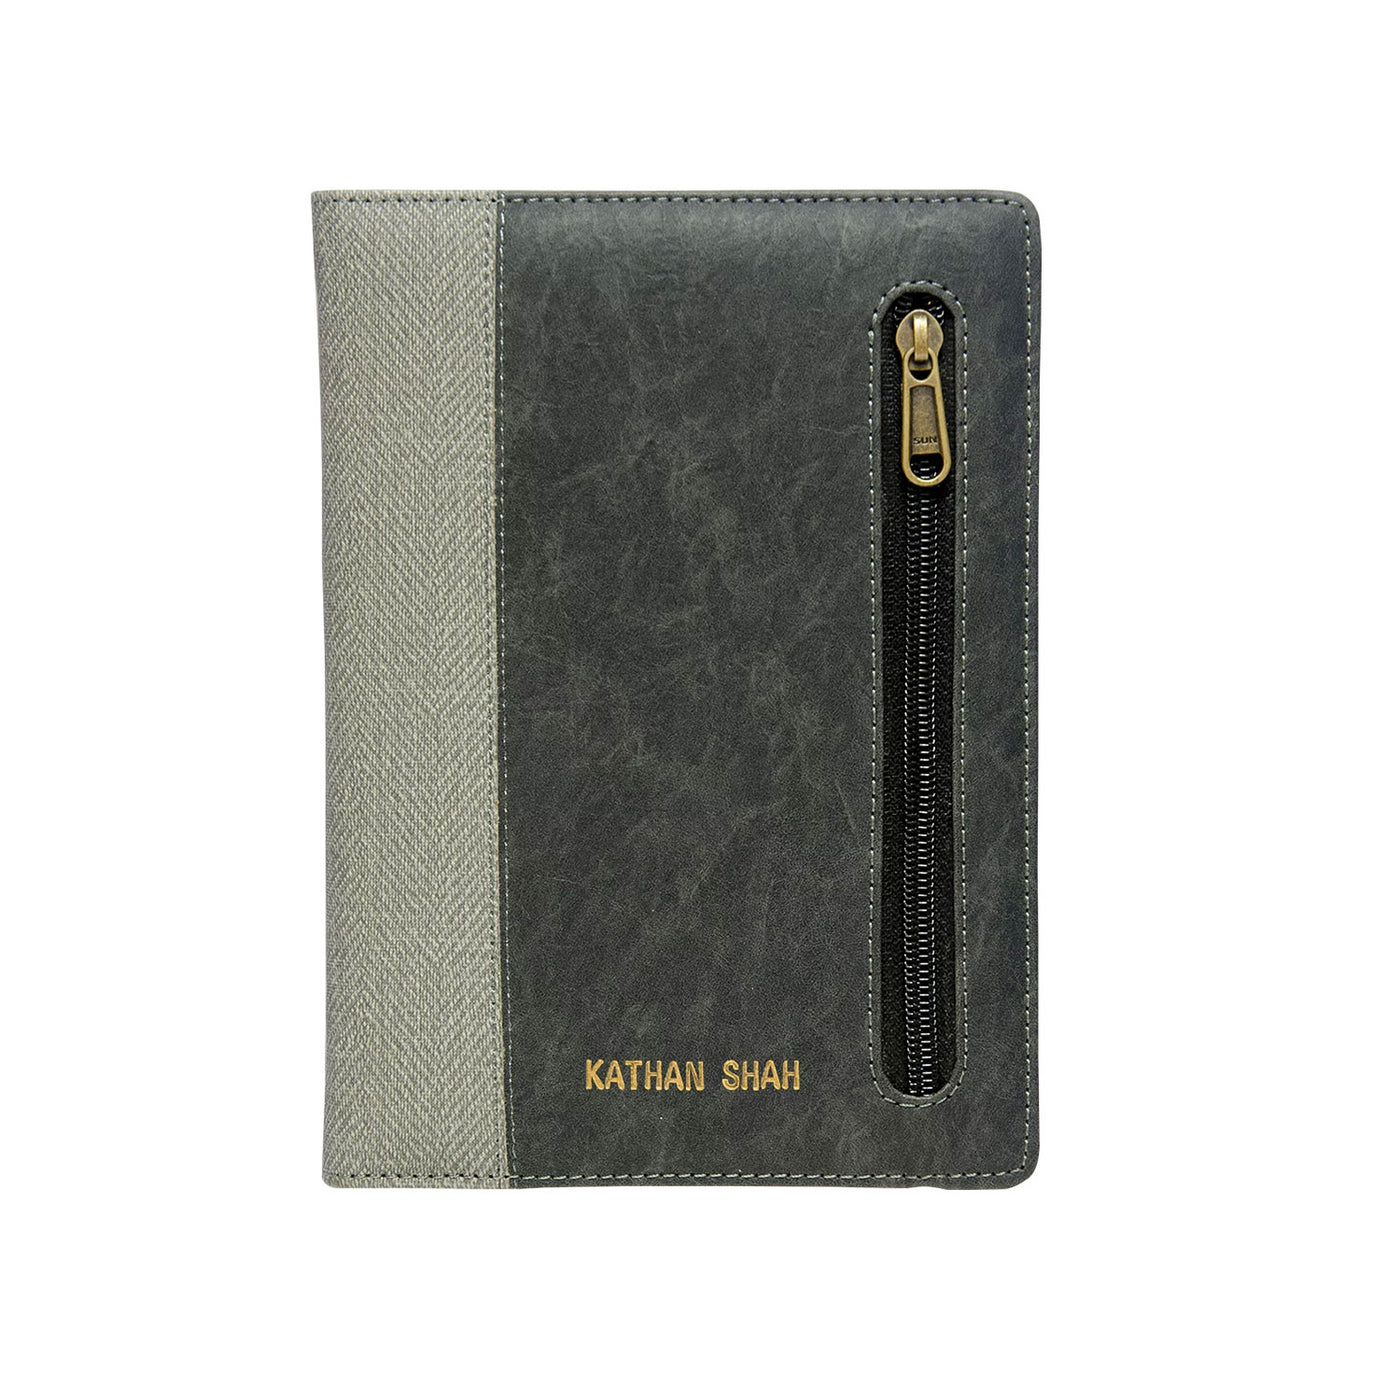 Scholar Zipper Grey Notebook - A5 Ruled 3